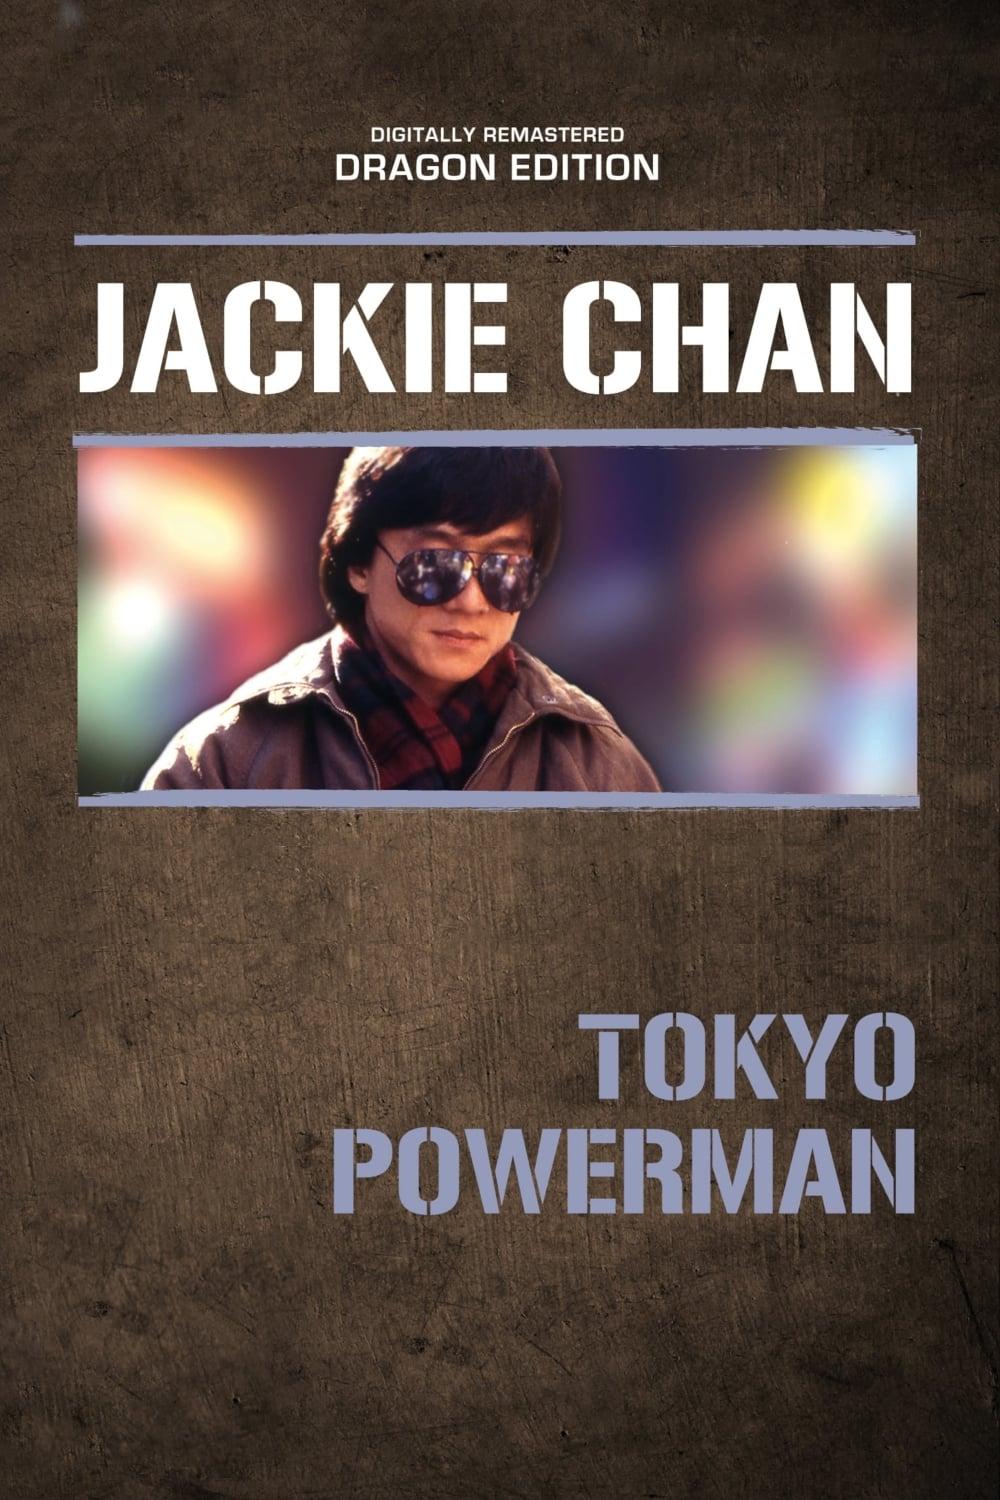 Tokyo Powerman poster